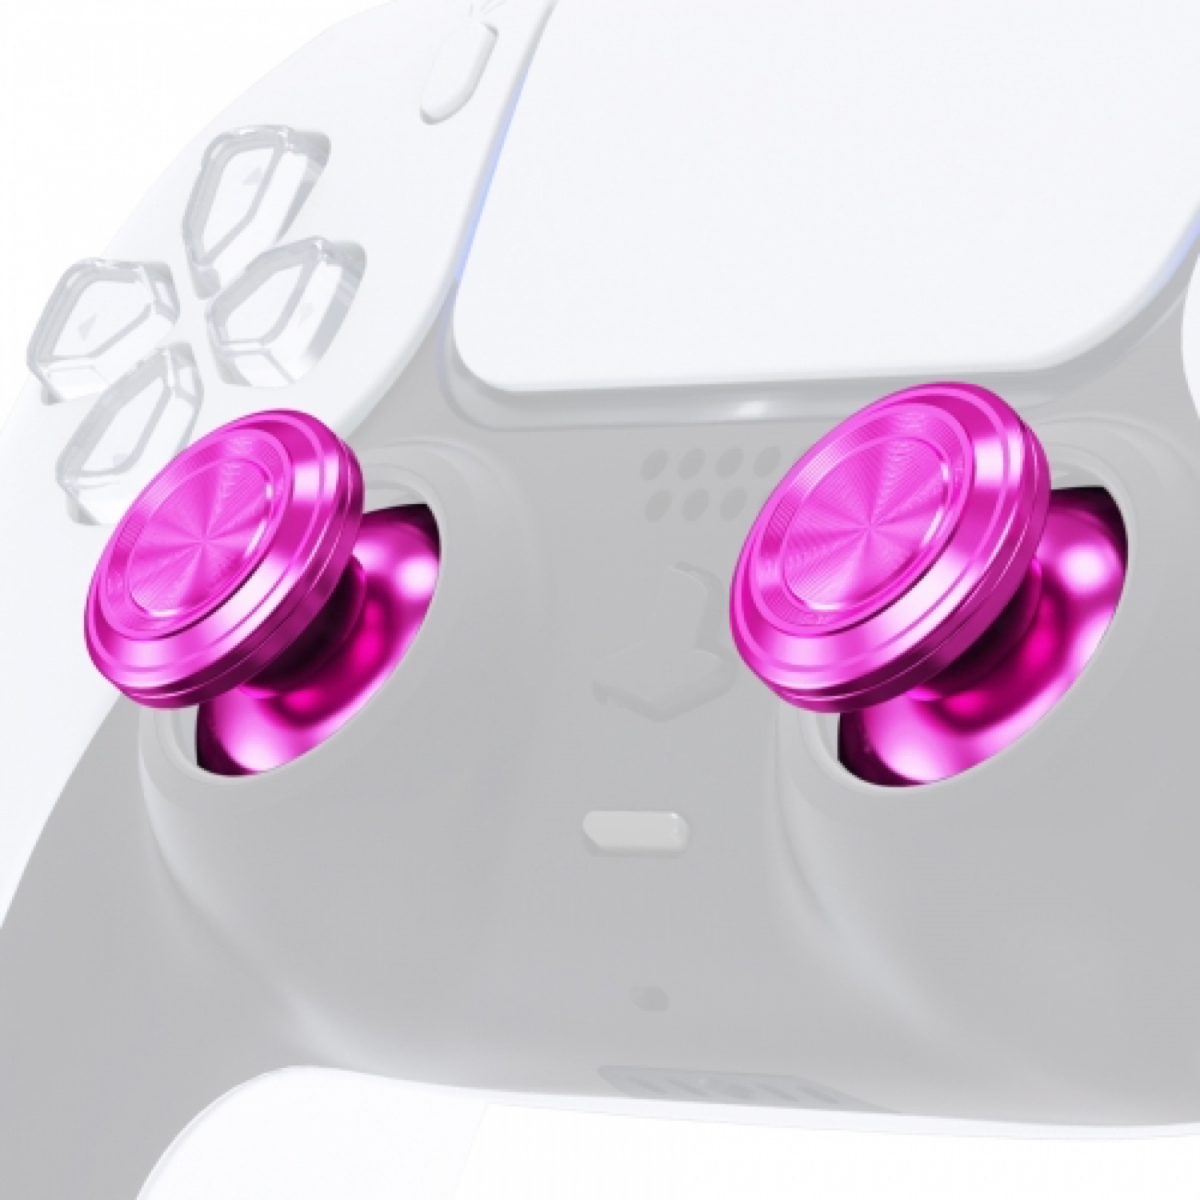 PS5 Controller Buttons - Pink Aluminium - Thumbsticks